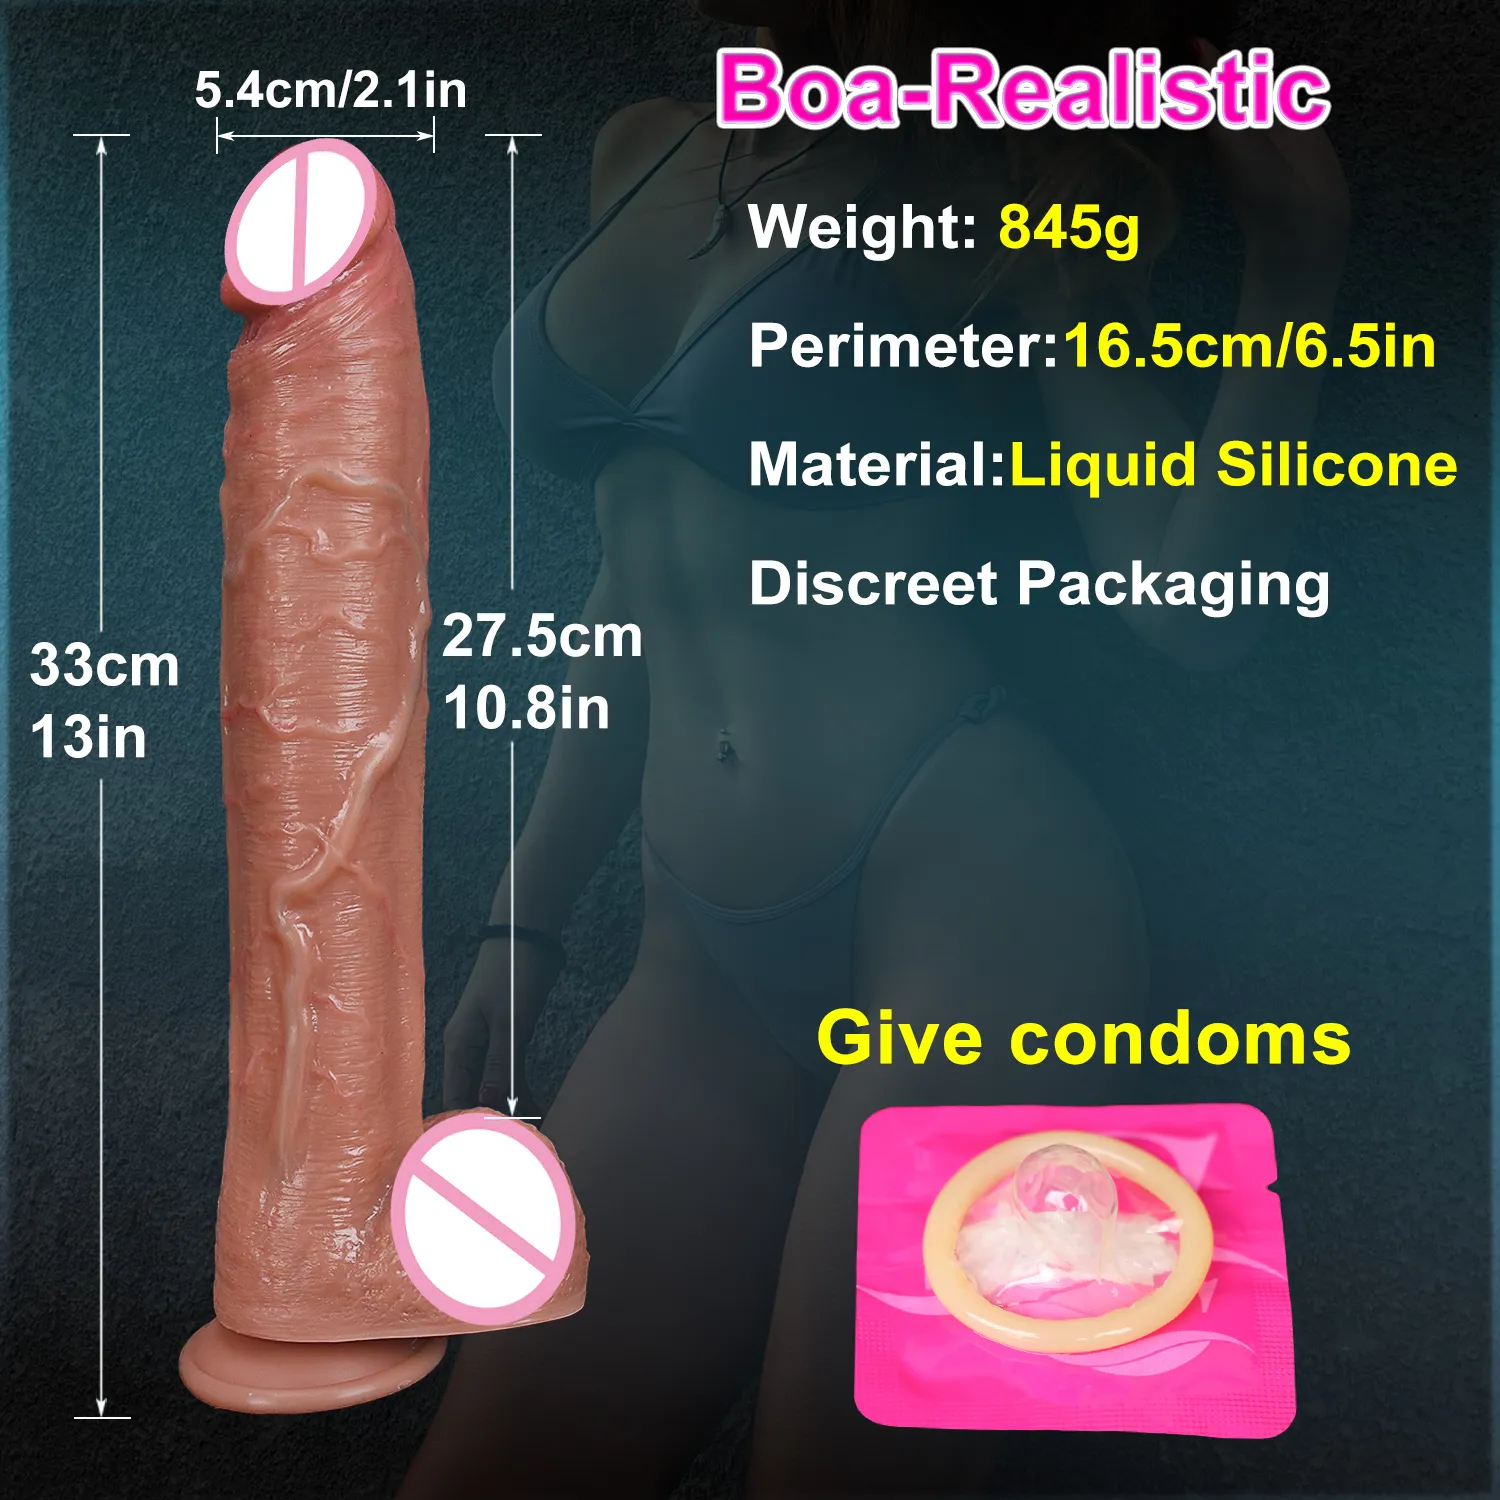 33 cm enorm dubbel penetration realistisk dildo mjuk kvinna onanatorer lång penis stor sug kopp kuk anal plug Sexig leksak för kvinnor